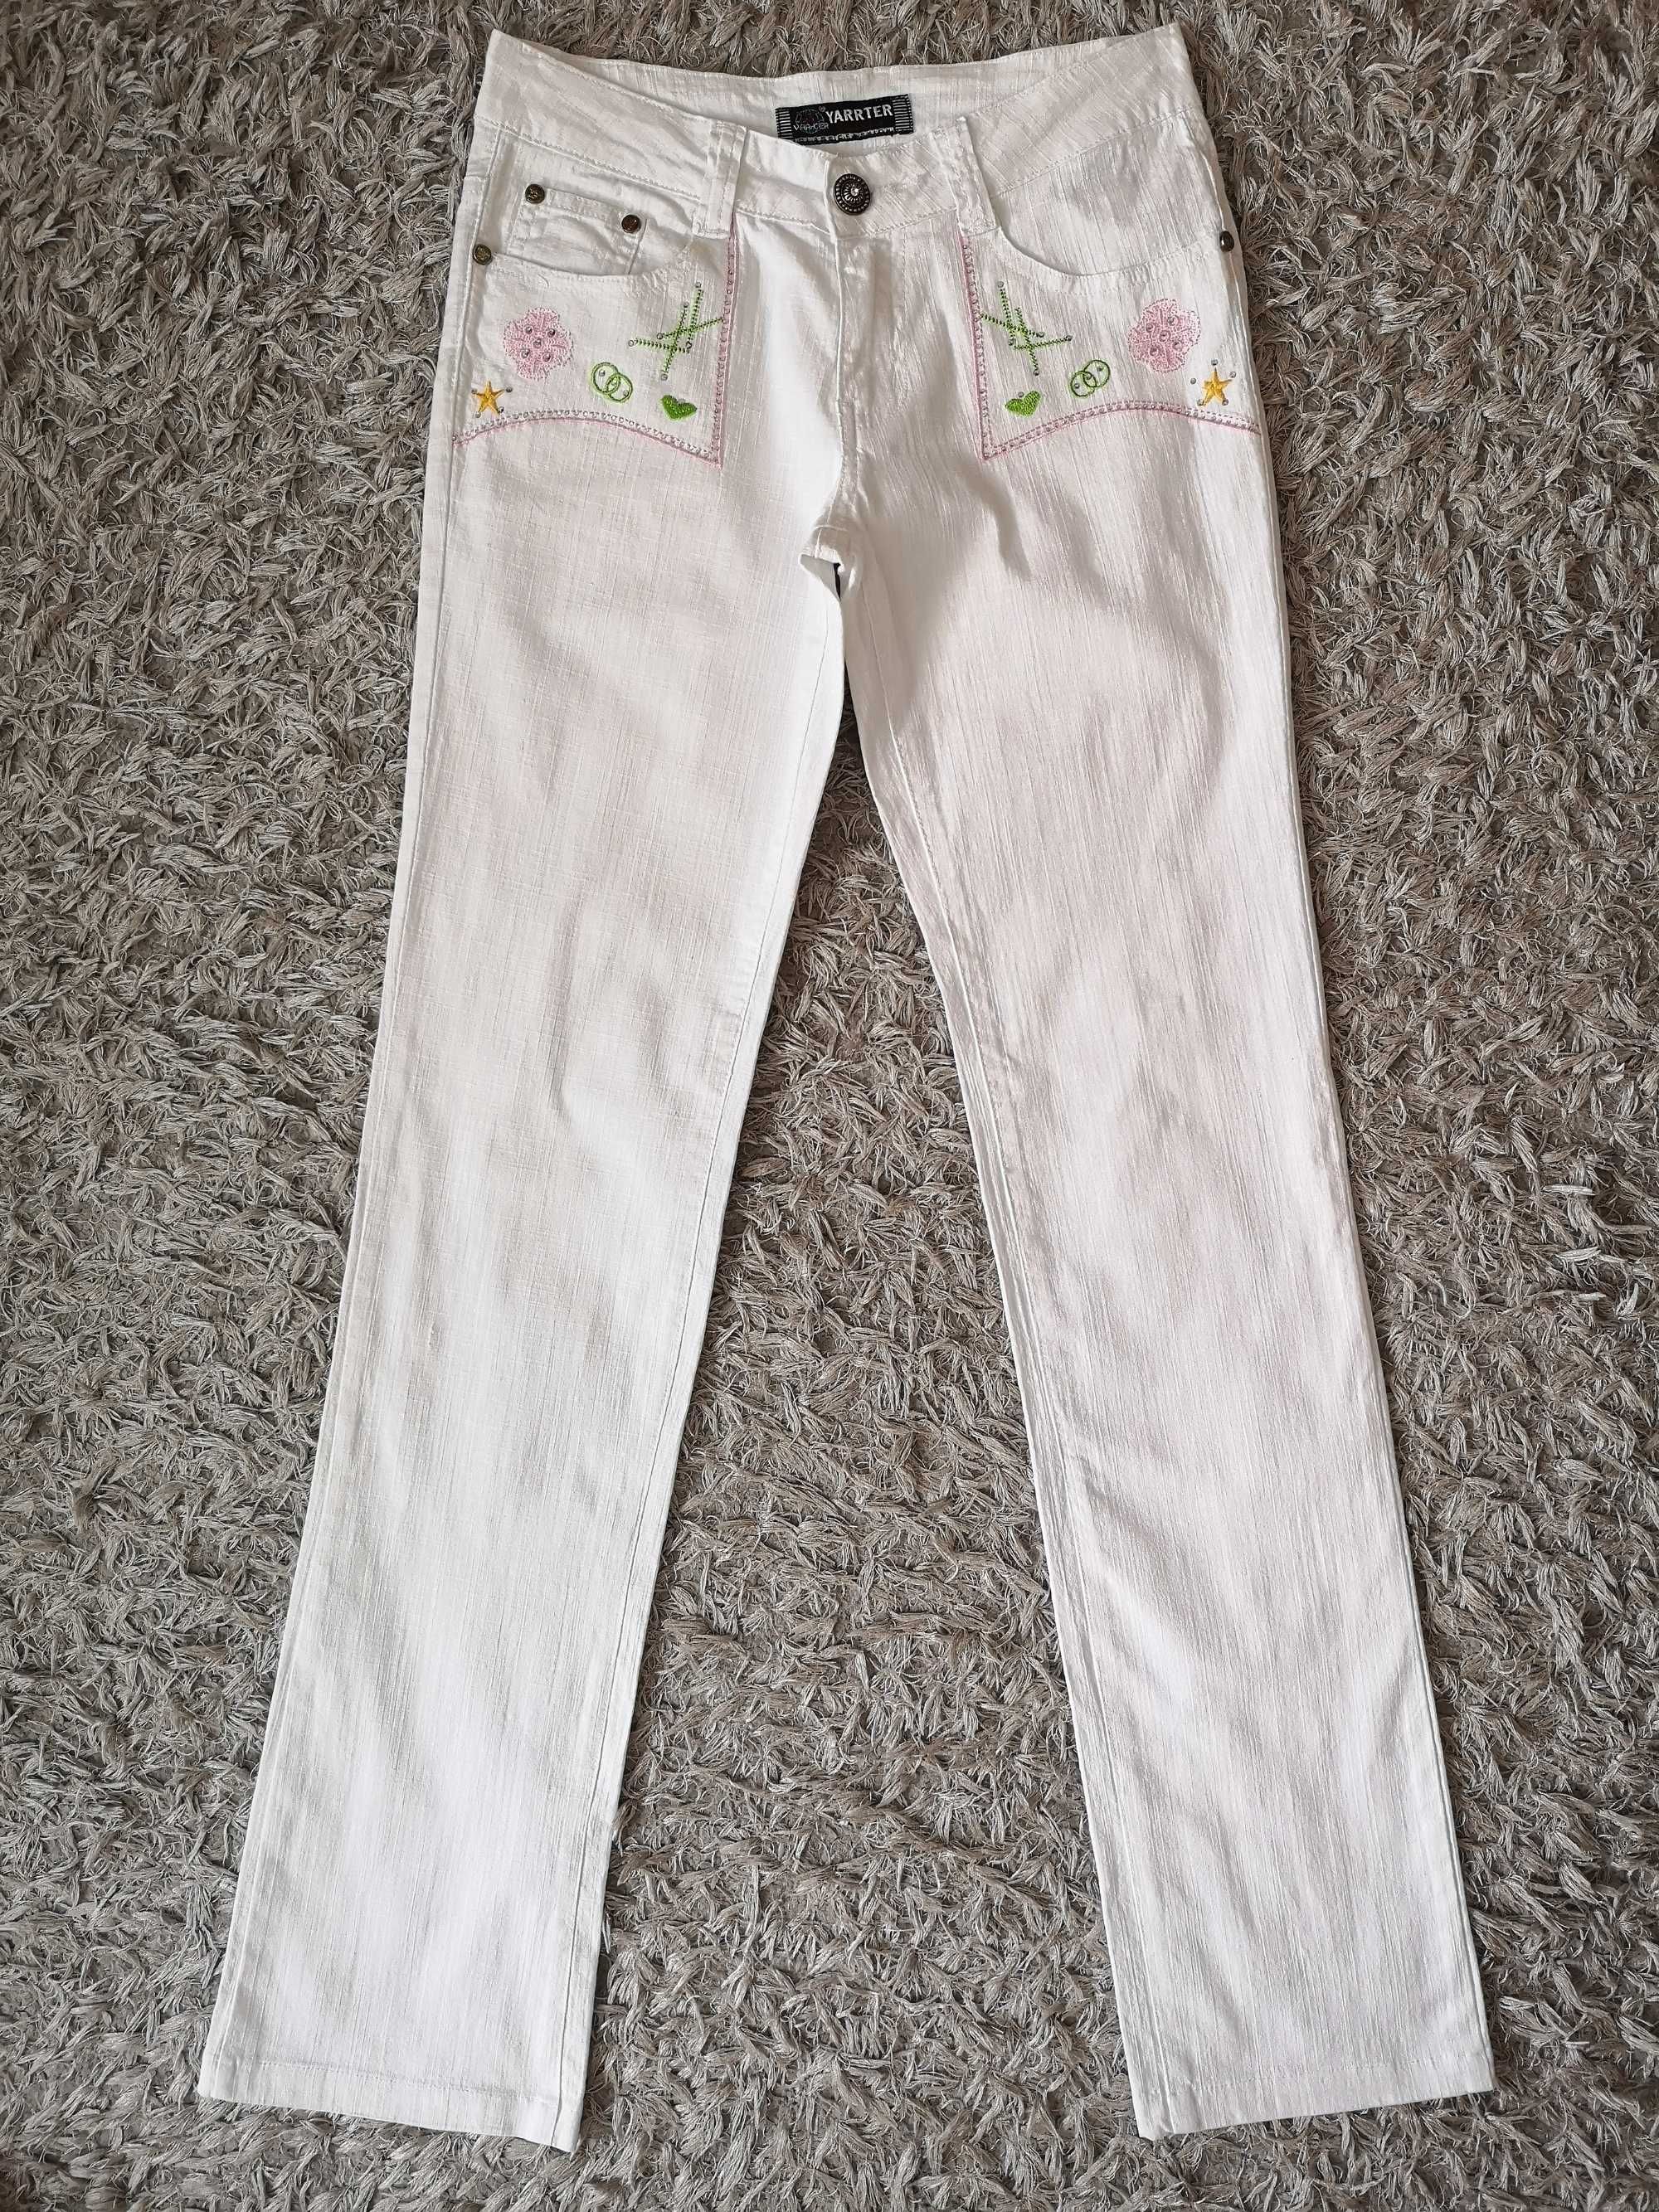 Spodnie damskie młodzieżowe bawełniane z haftem na lato r.36-38